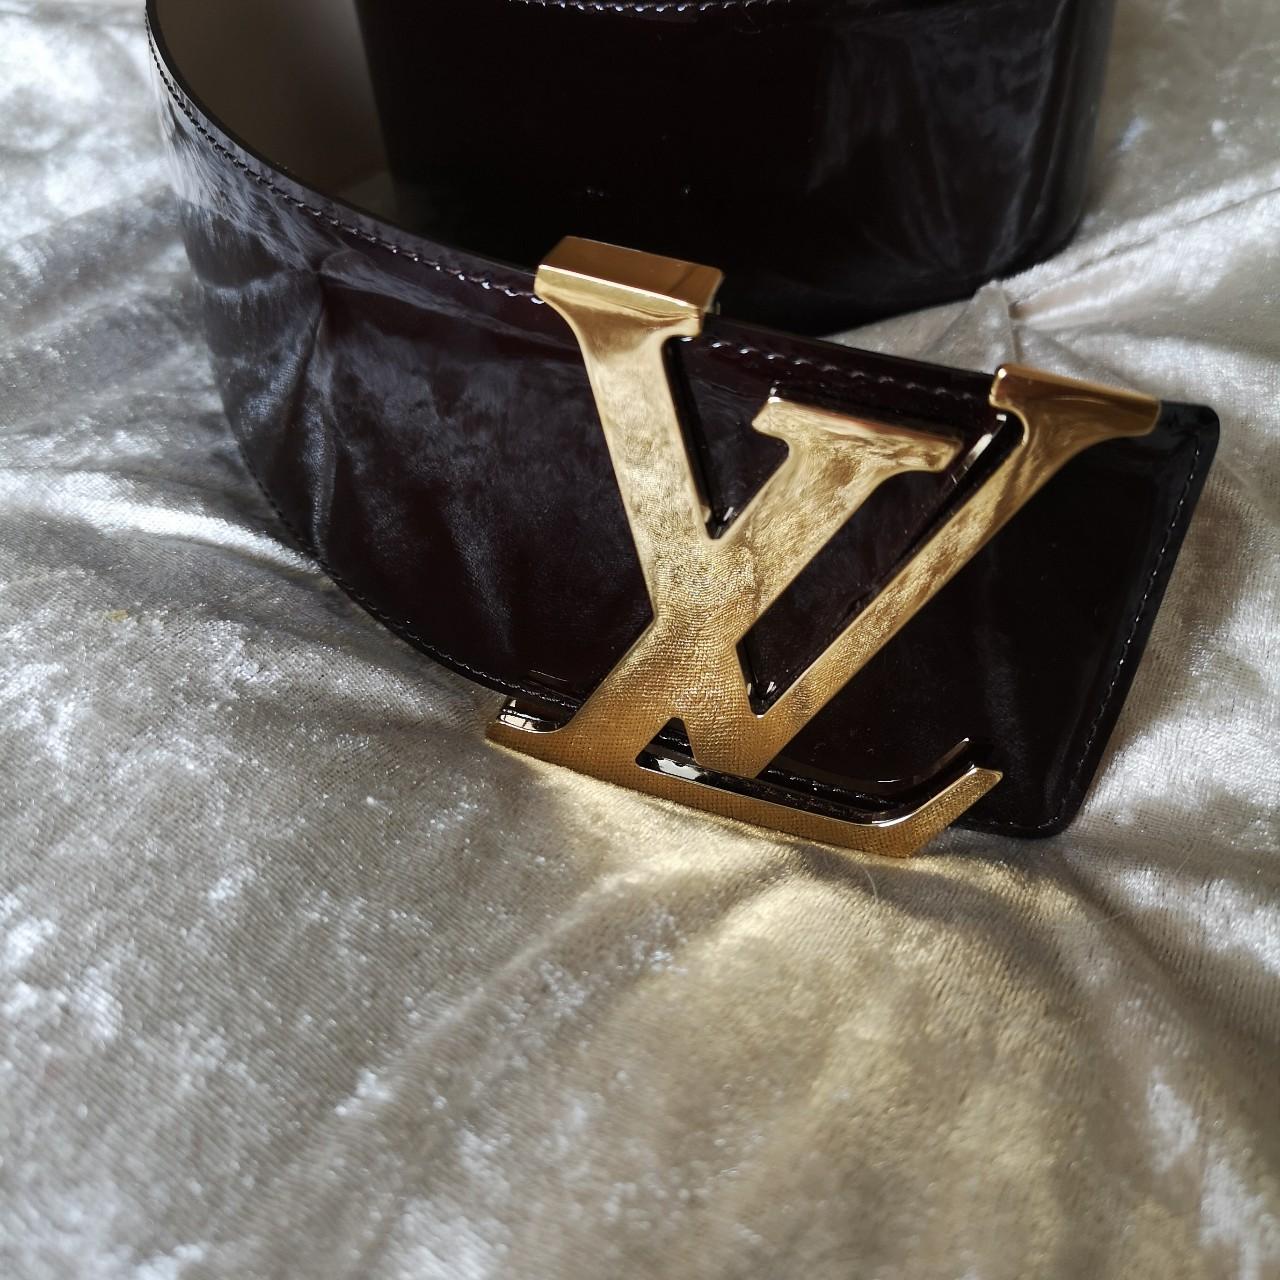 Louis Vuitton Patent Belt